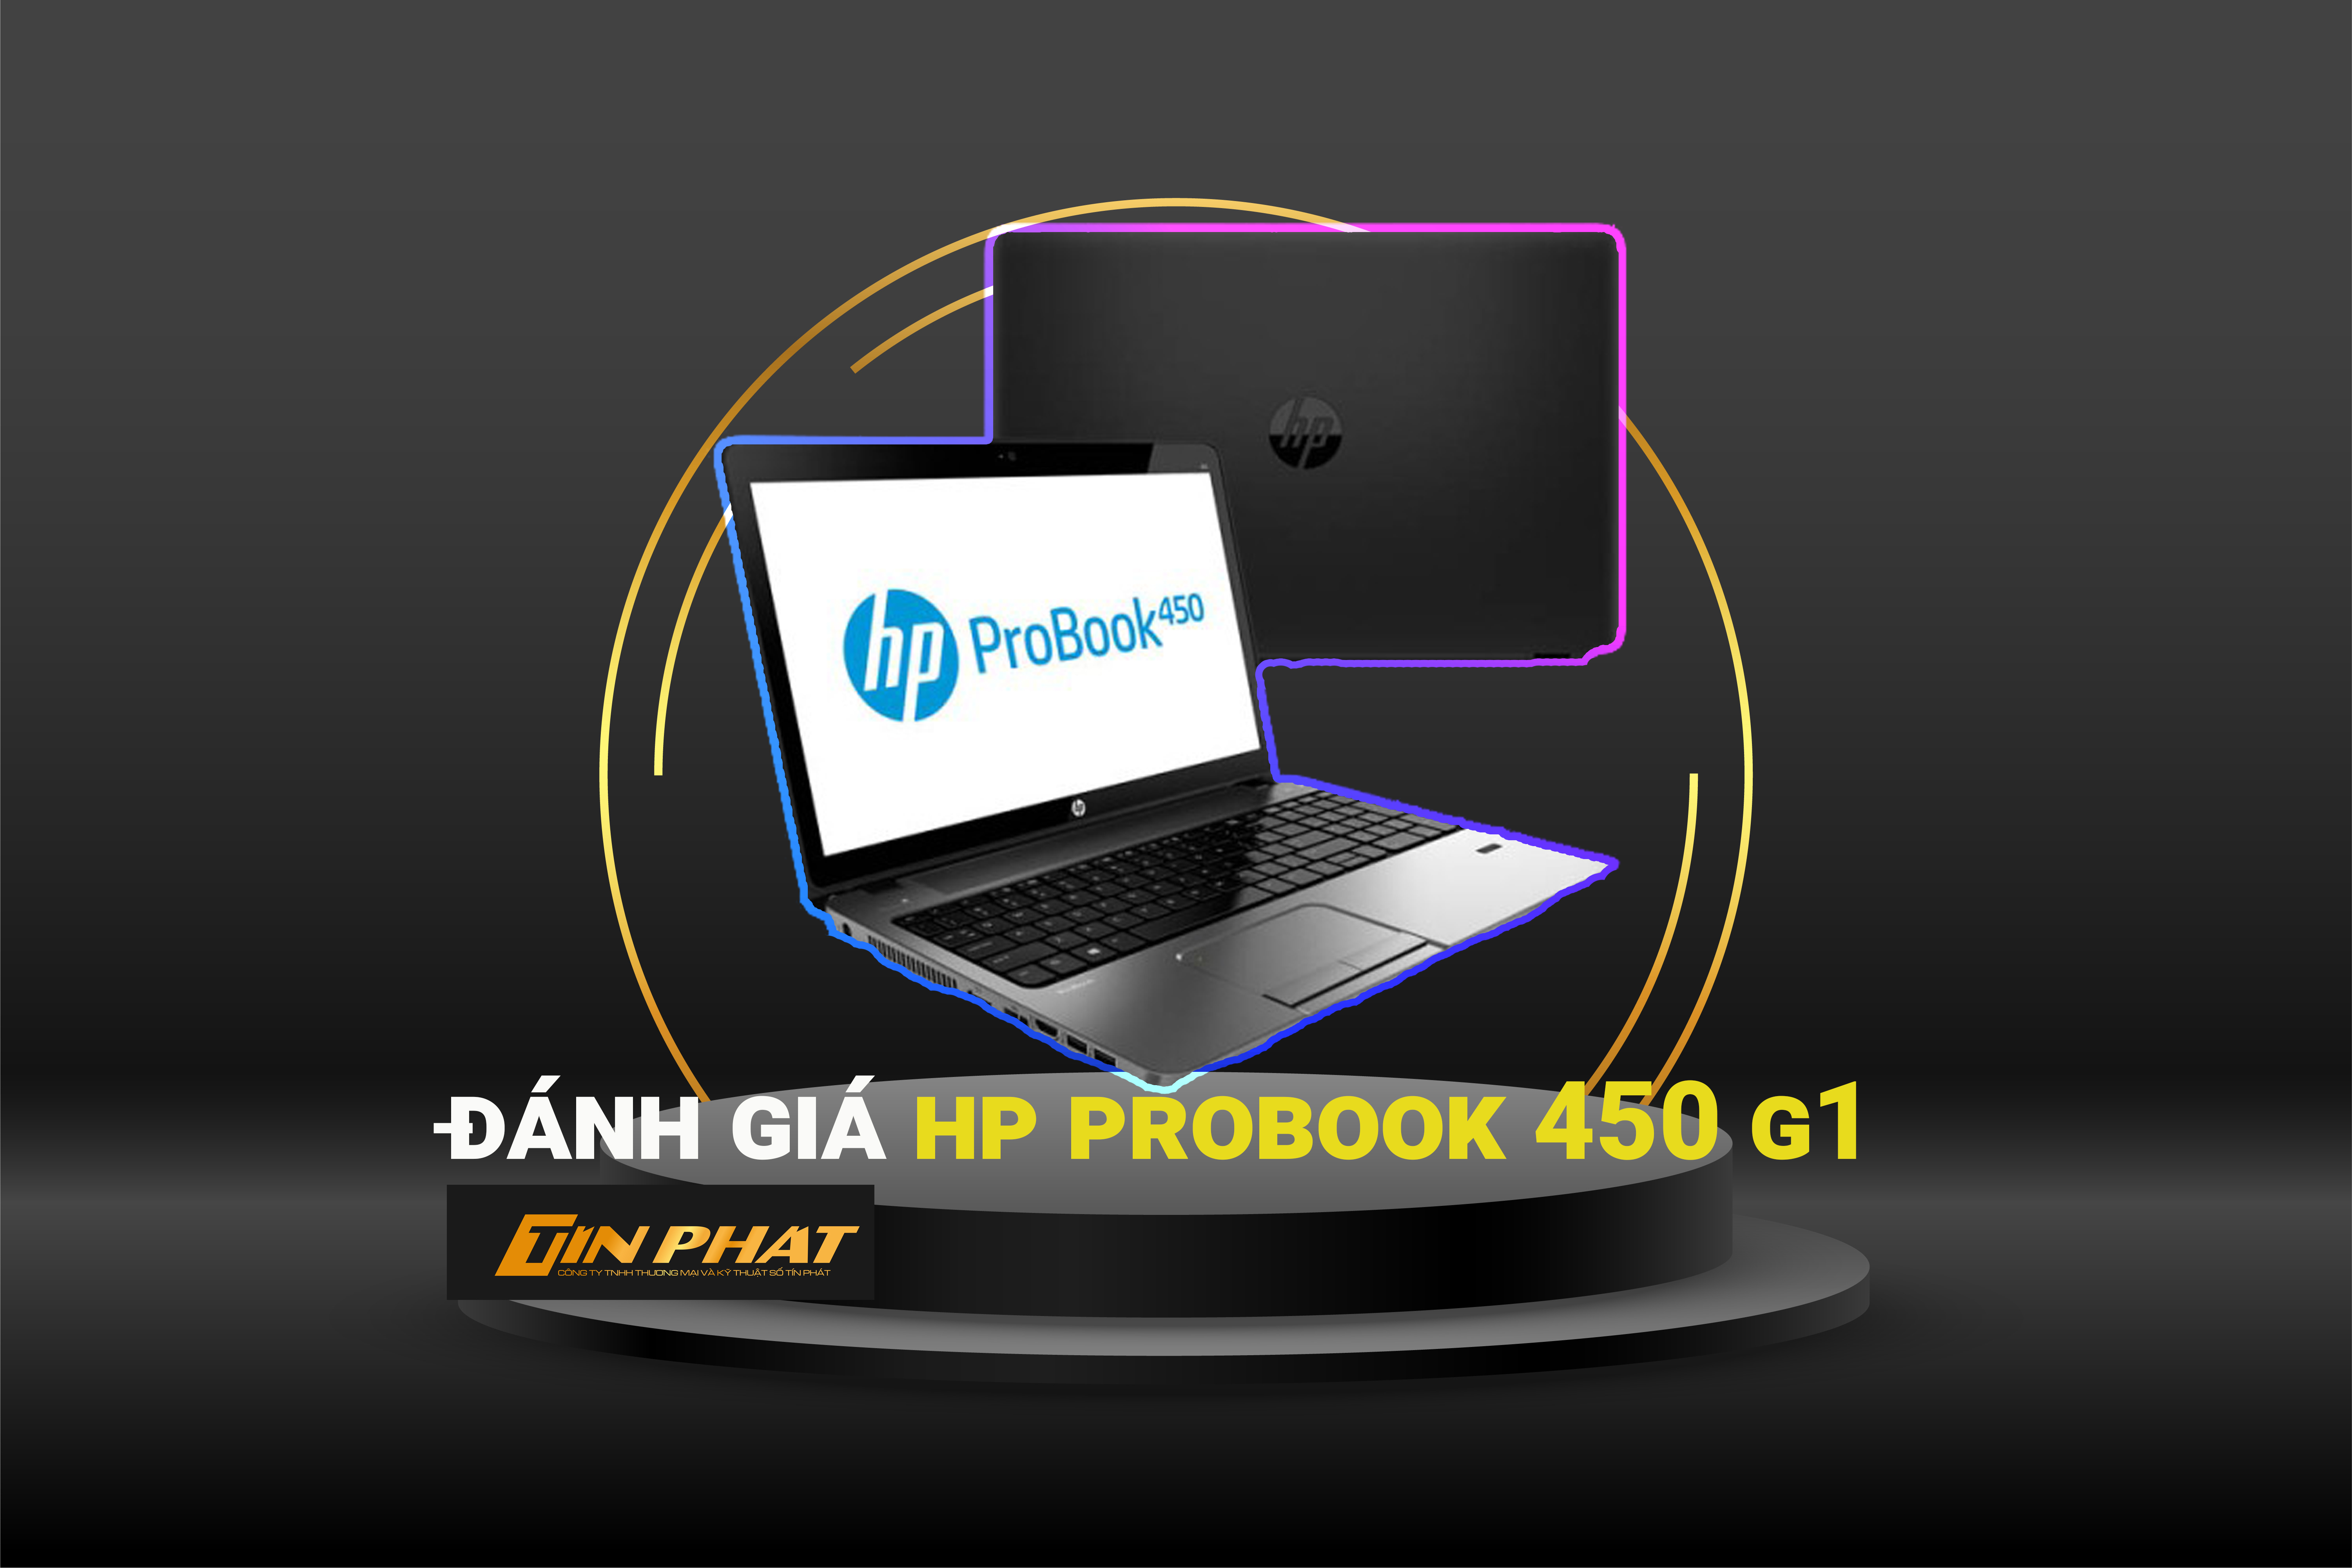 Đánh giá Laptop HP ProBook 450 G1 model hiện đại, thiết kế chuyên nghiệp